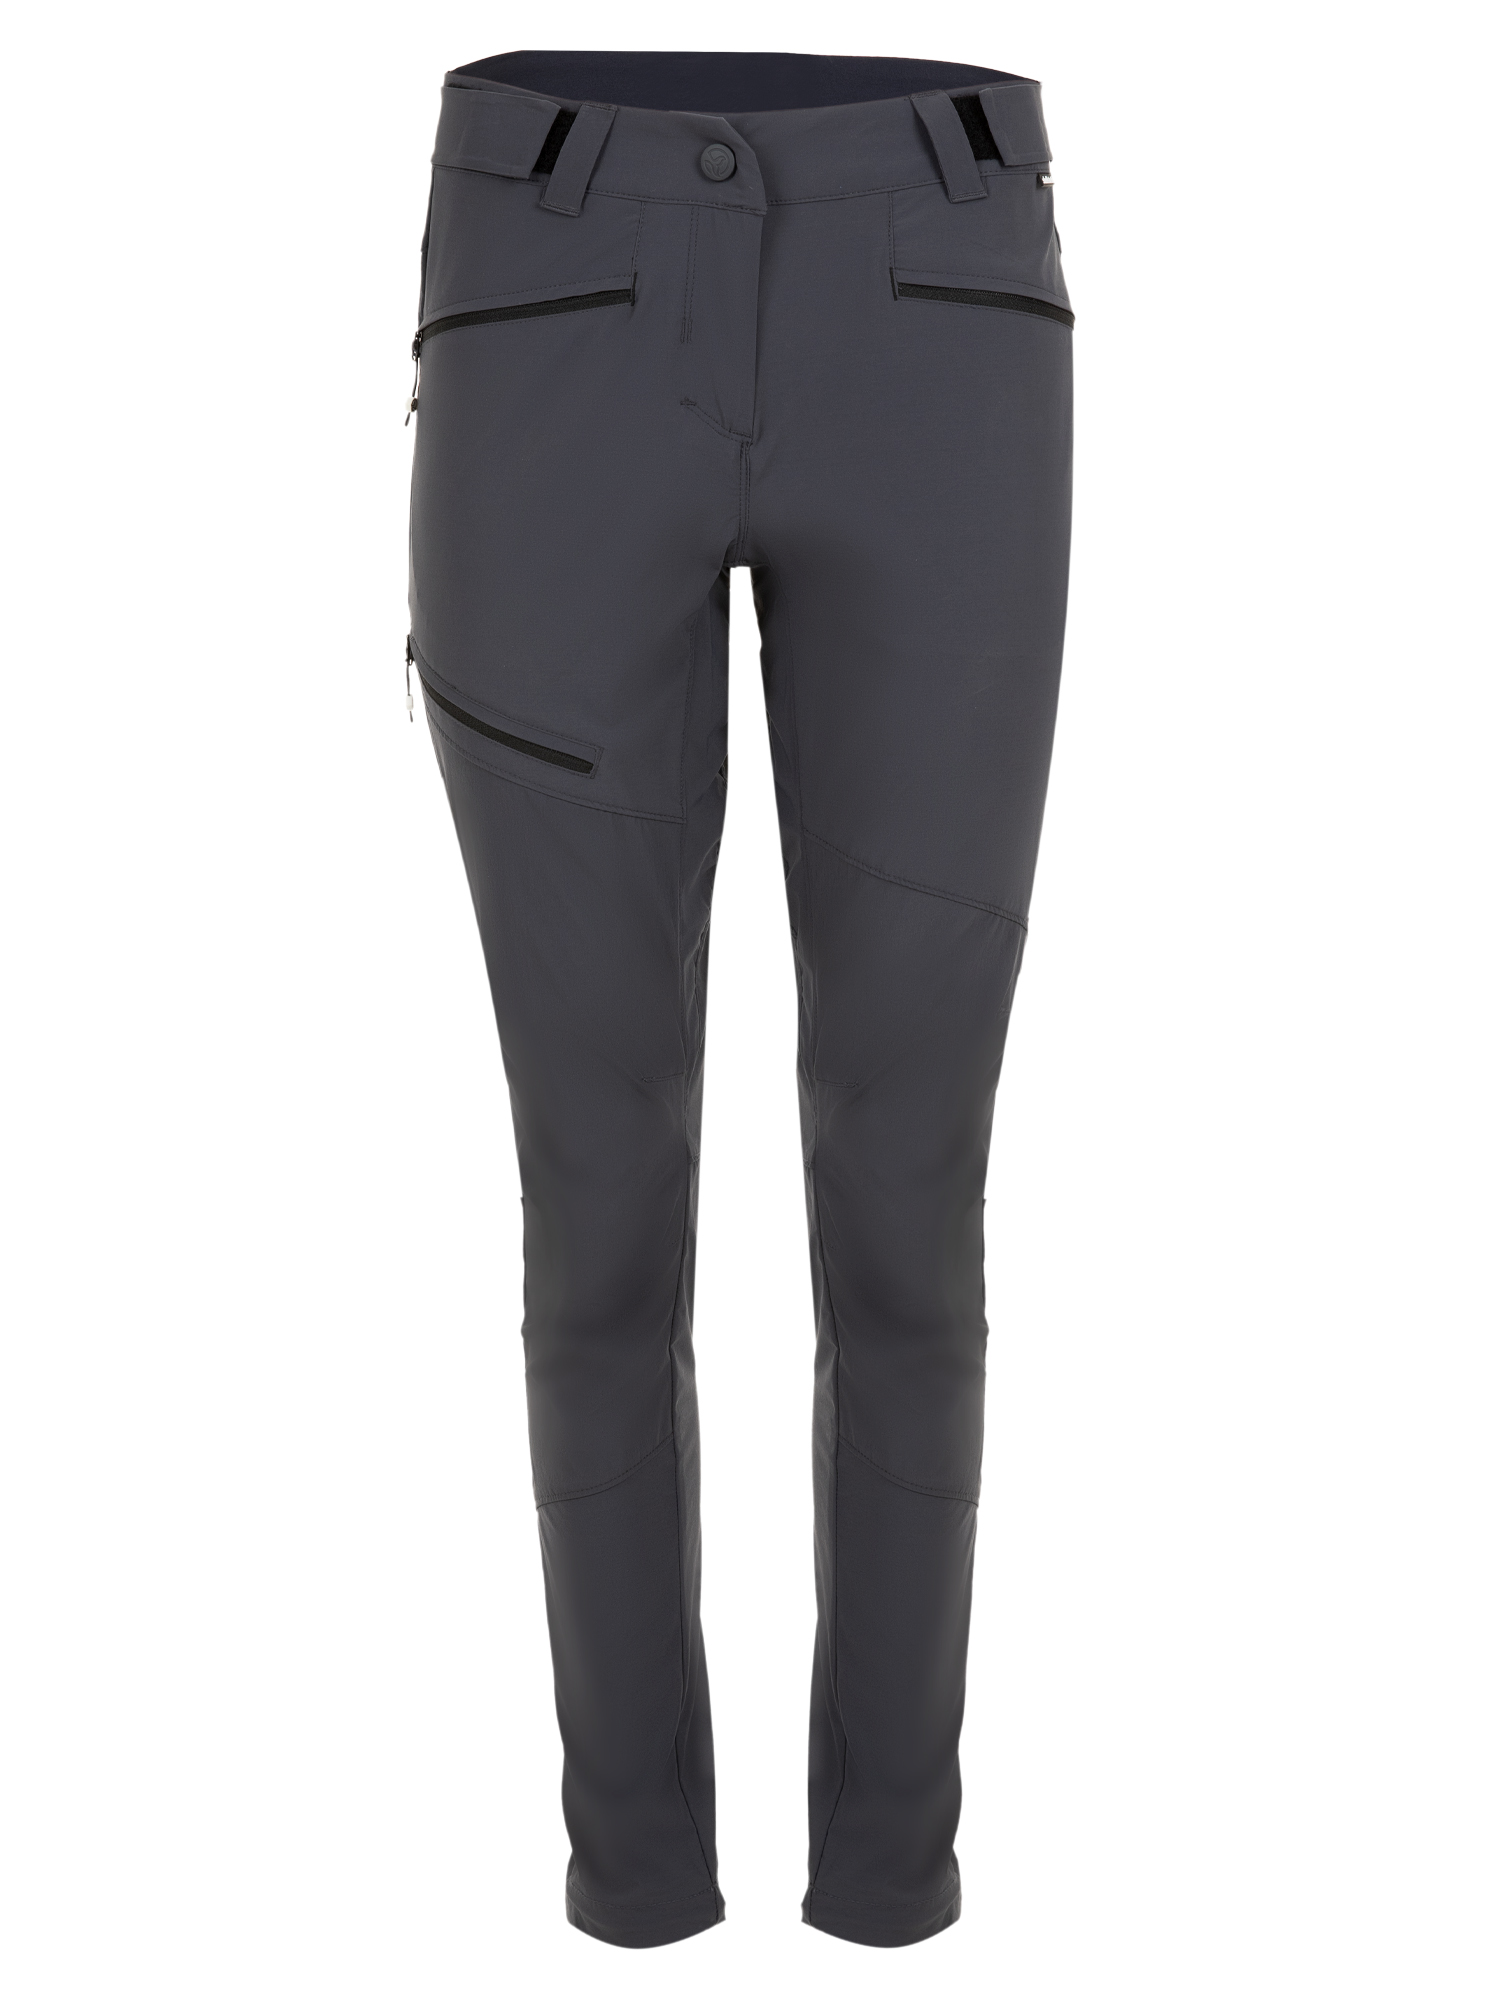 Спортивные брюки женские Ternua Rotar Pt W серые XS